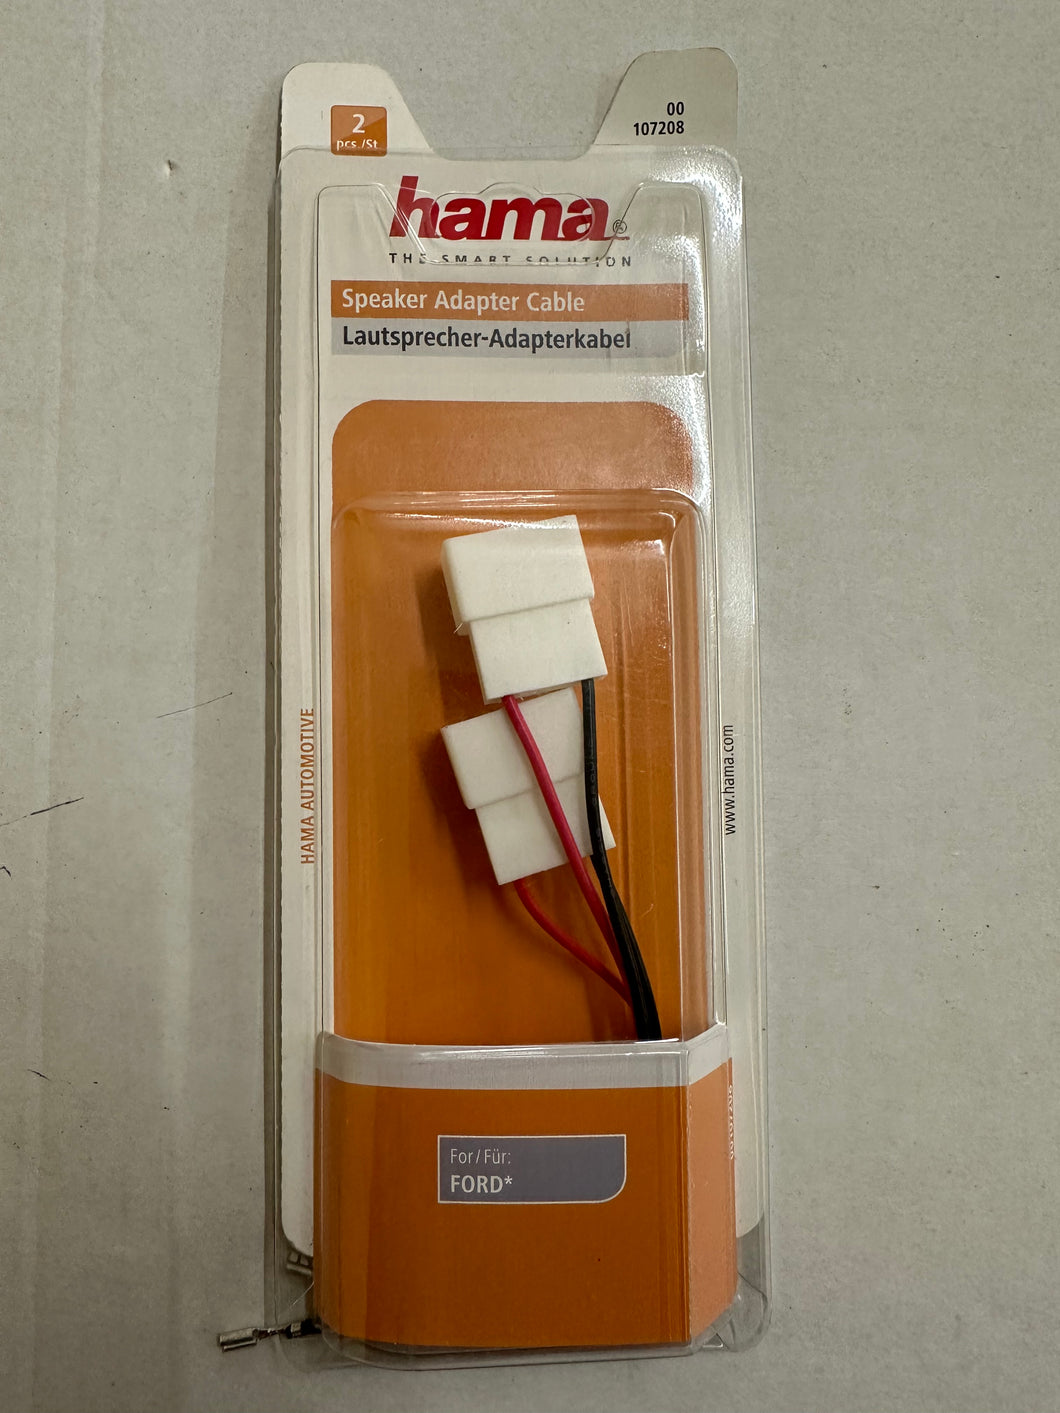 Hama 00107208 Lautsprecher-Adapterkabel für Ford (Mehrfarbig)